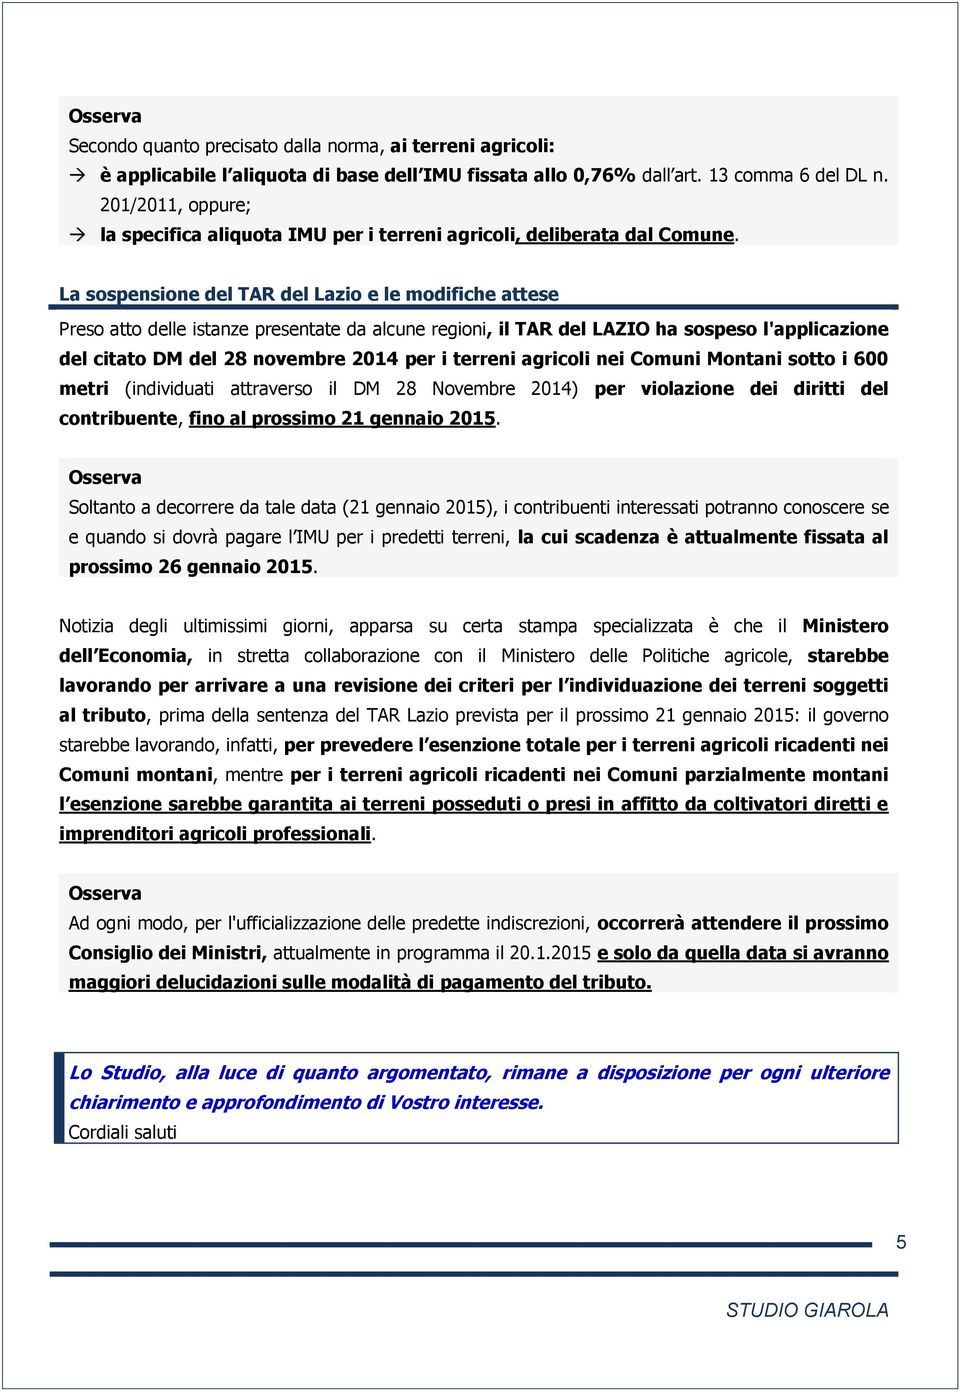 La sospensione del TAR del Lazio e le modifiche attese Preso atto delle istanze presentate da alcune regioni, il TAR del LAZIO ha sospeso l'applicazione del citato DM del 28 novembre 2014 per i